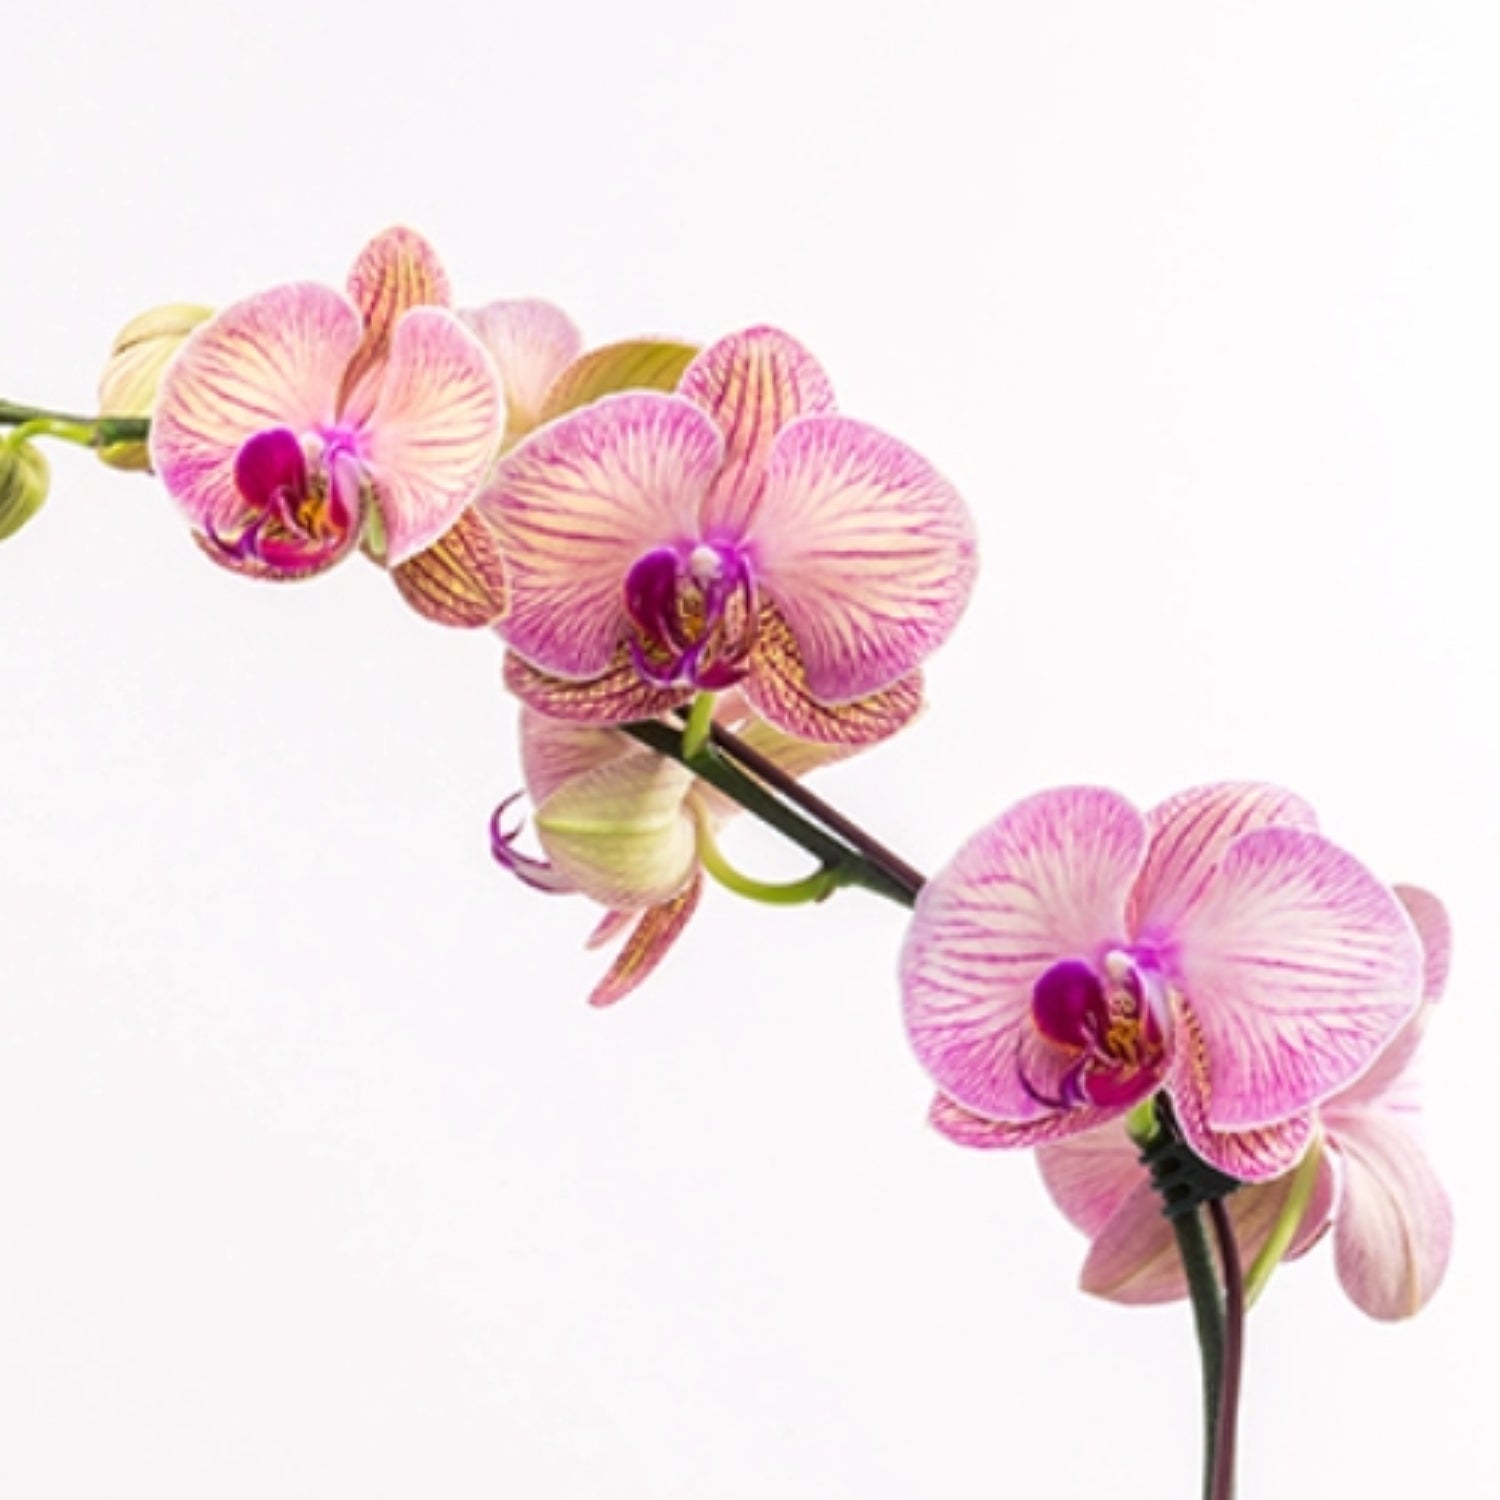 Seasonal Phalaenopsis Orchid in Pot Closeup